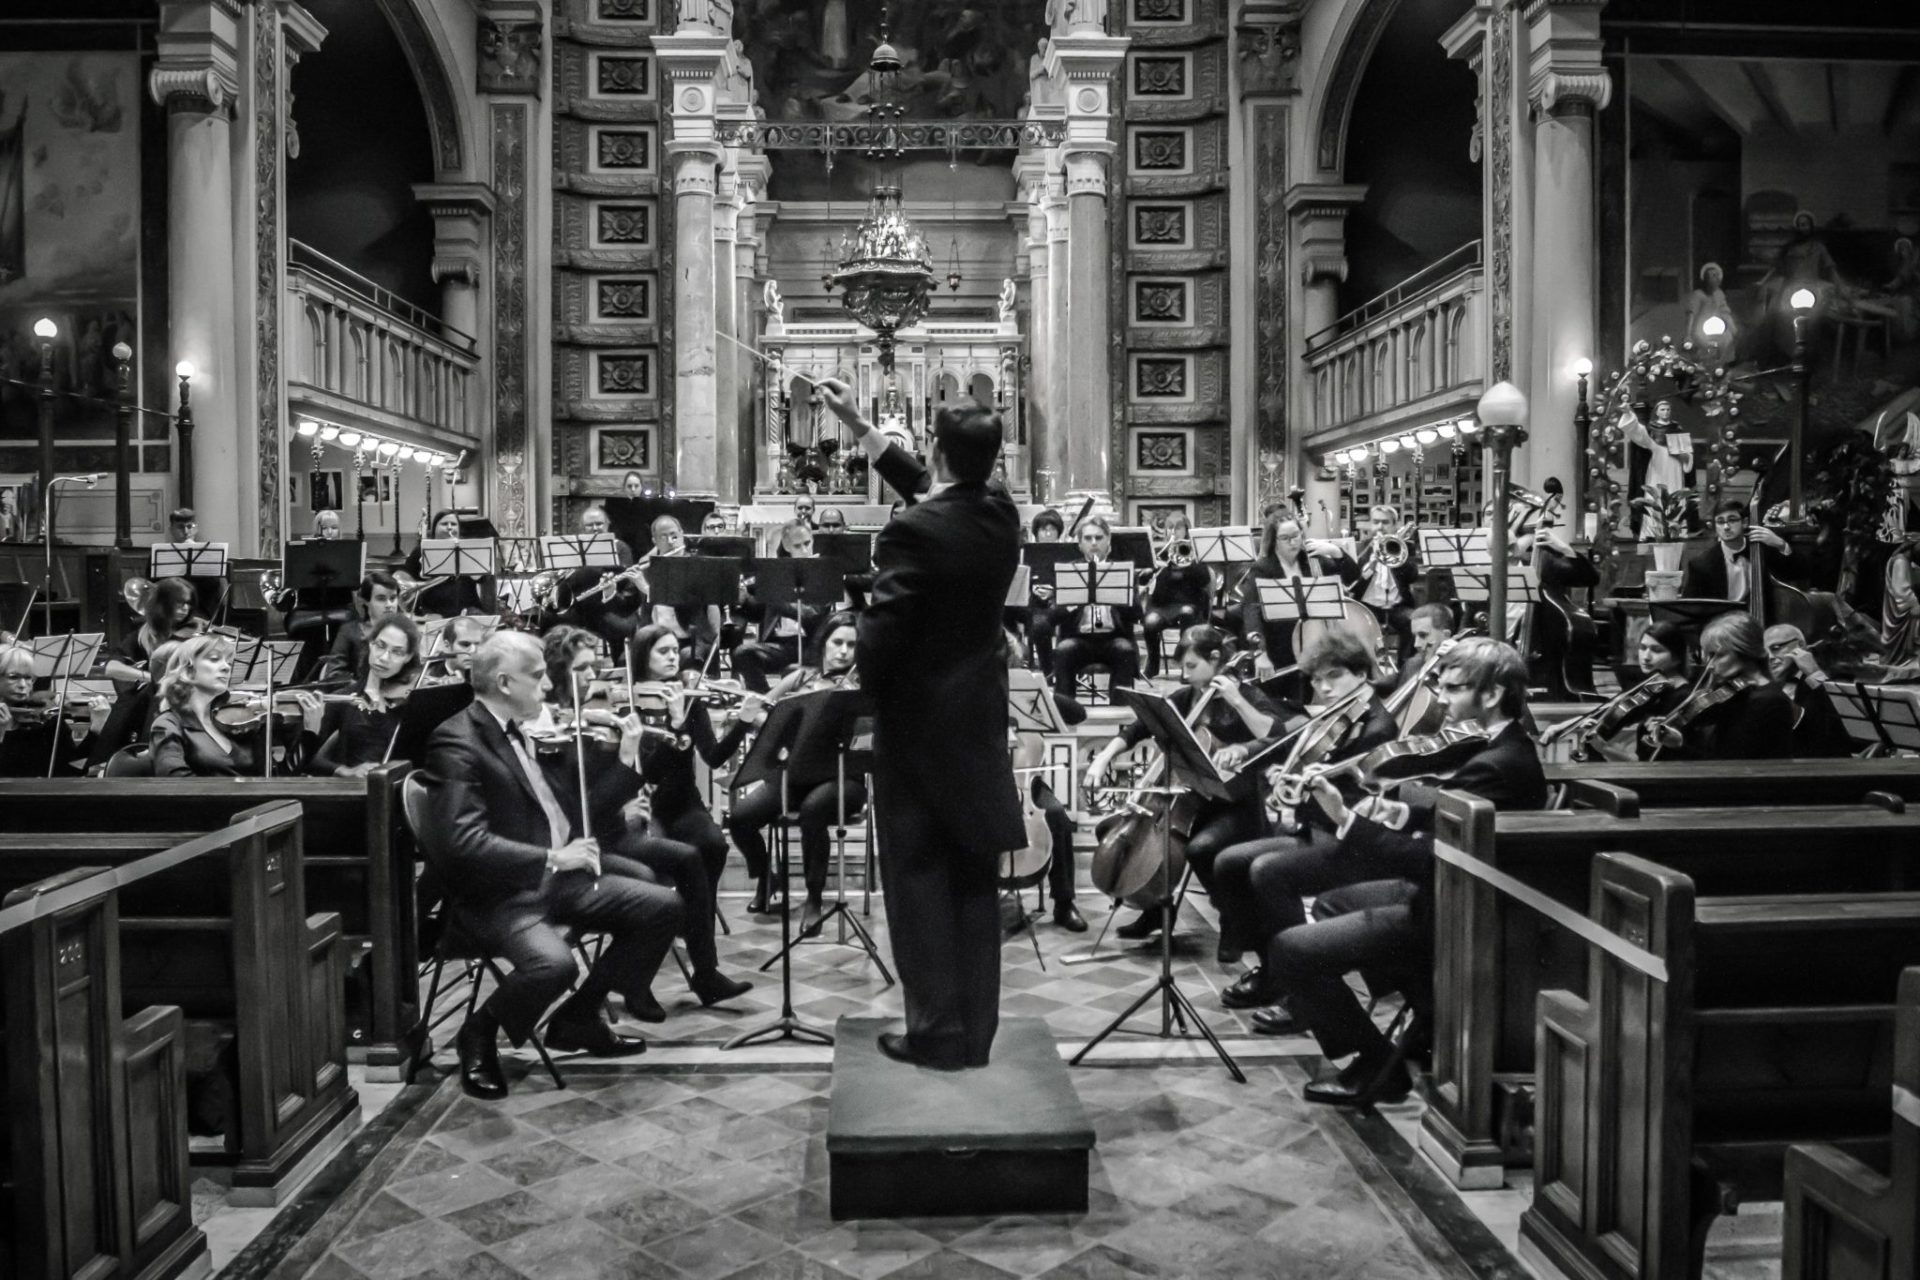 Concierto de Aranjuez with the Orchestre Symphonie de l’Isle – June 13, 2020 *POSTPONED DUE TO PANDEMIC*